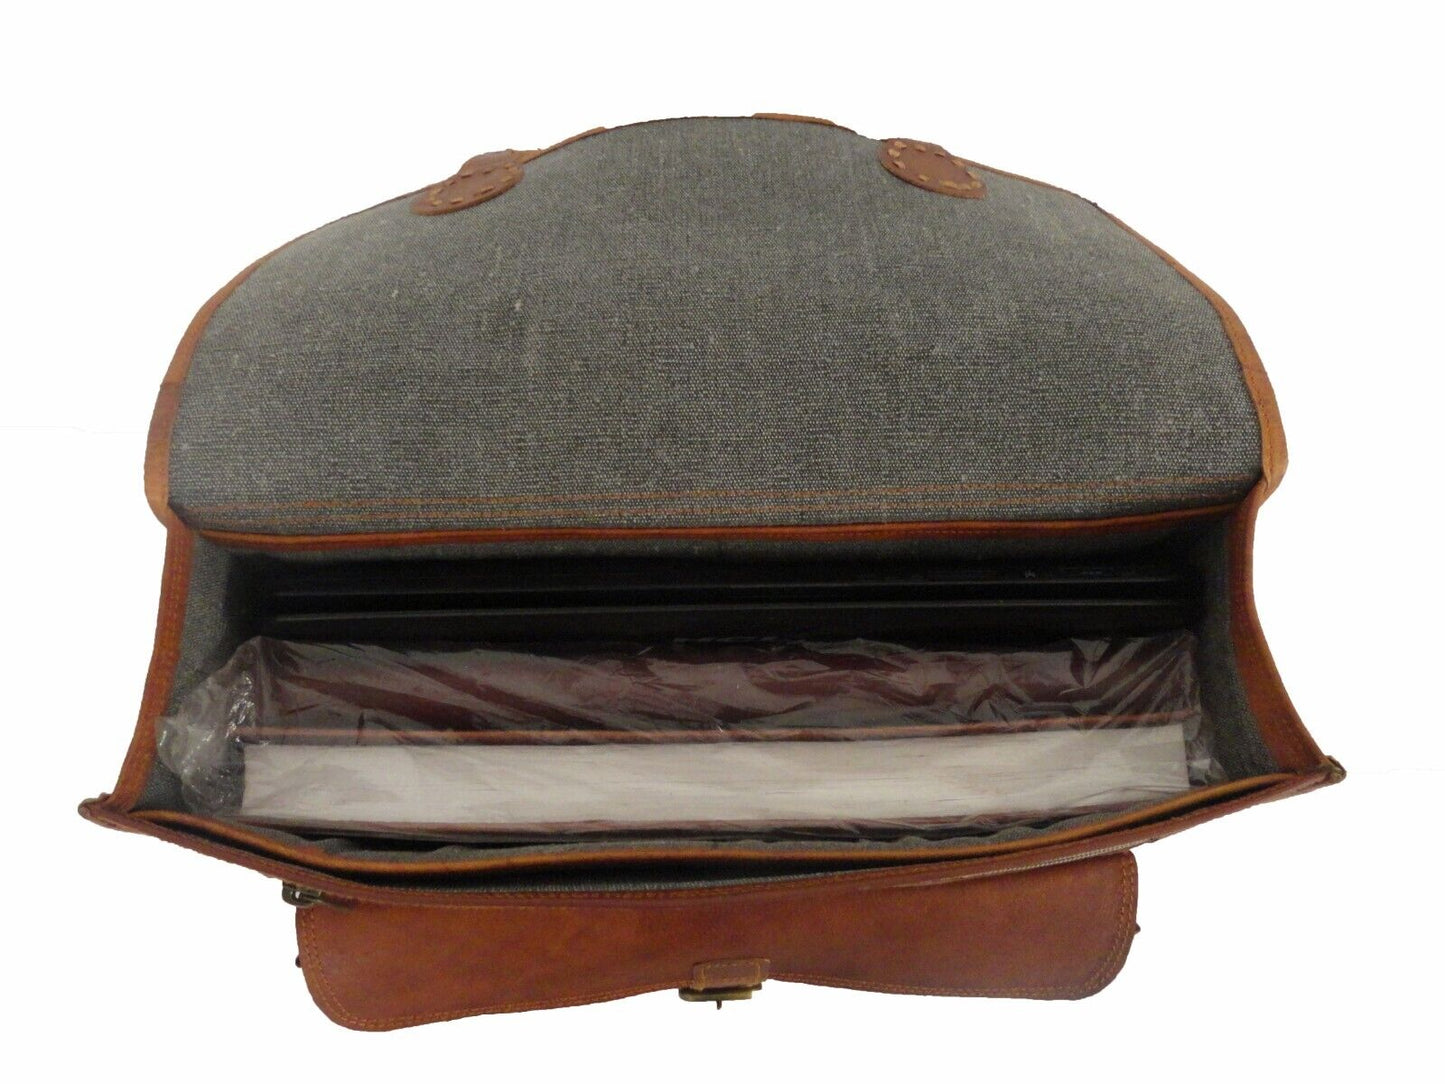 Vintage Leather Satchel Messenger Bag